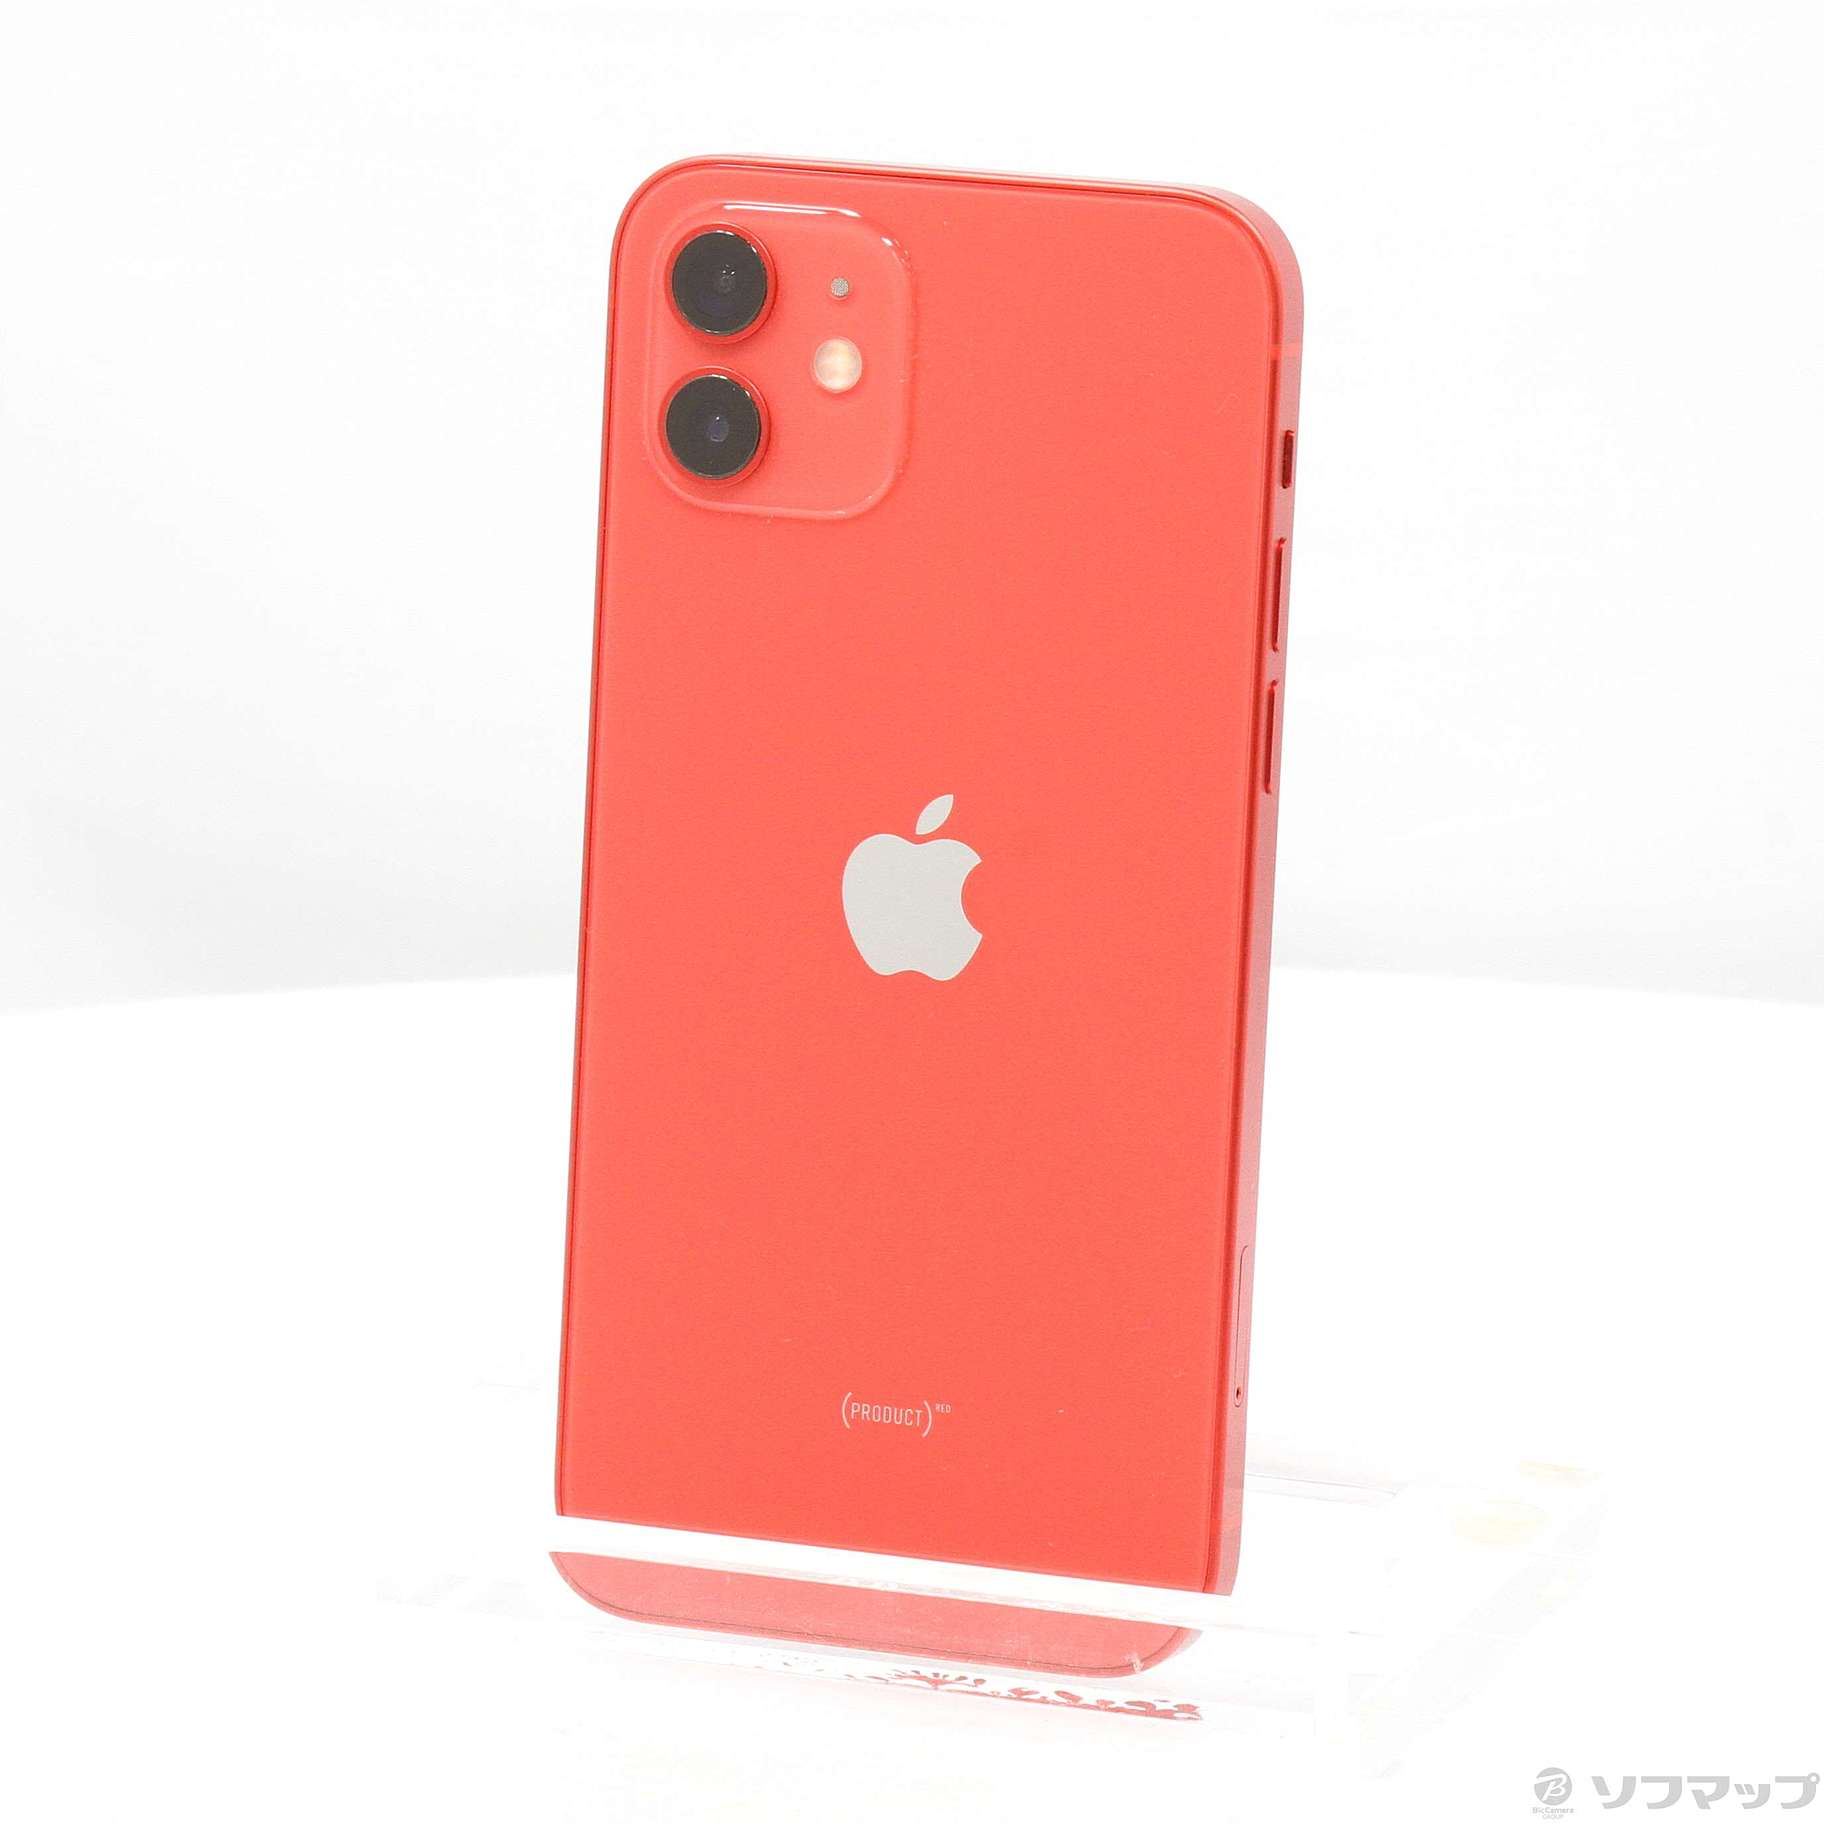 18,565円【 美品】iPhone 12 プロダクトレッド64GB SIMフリー